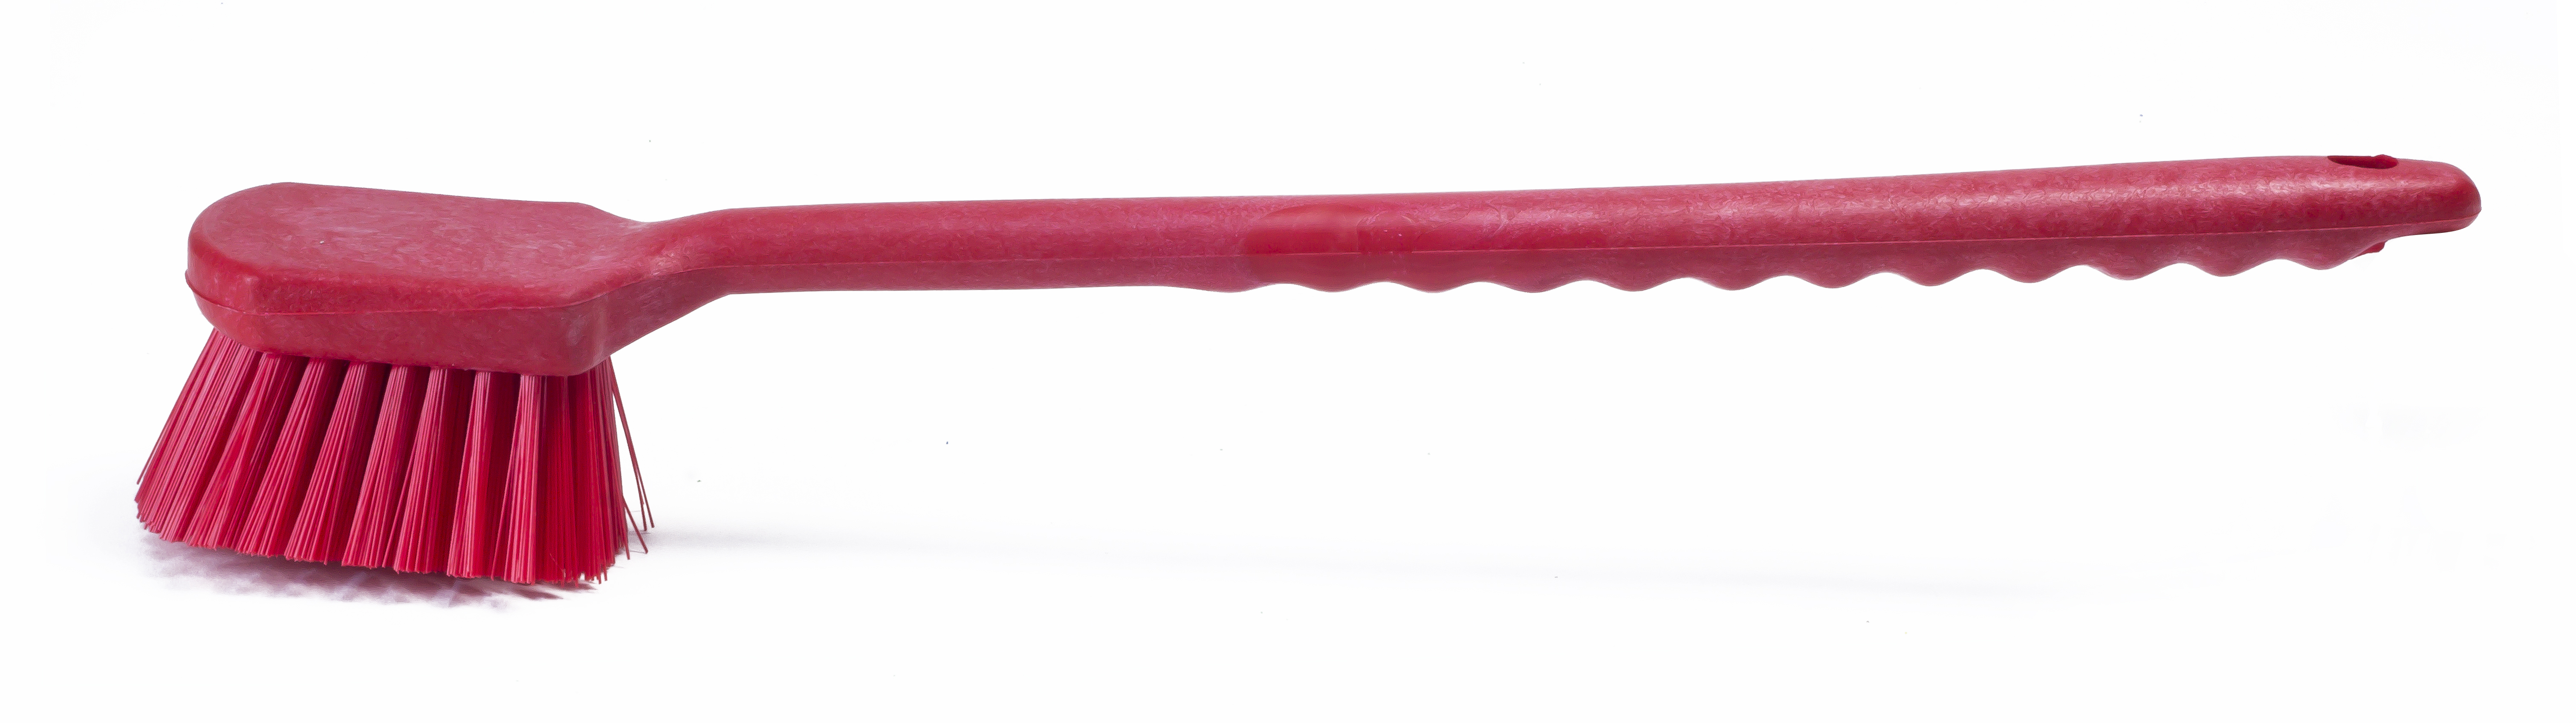 Щетка HACCPER с длинной ручкой, для мытья и оттирки, жесткая, 500 мм, красная